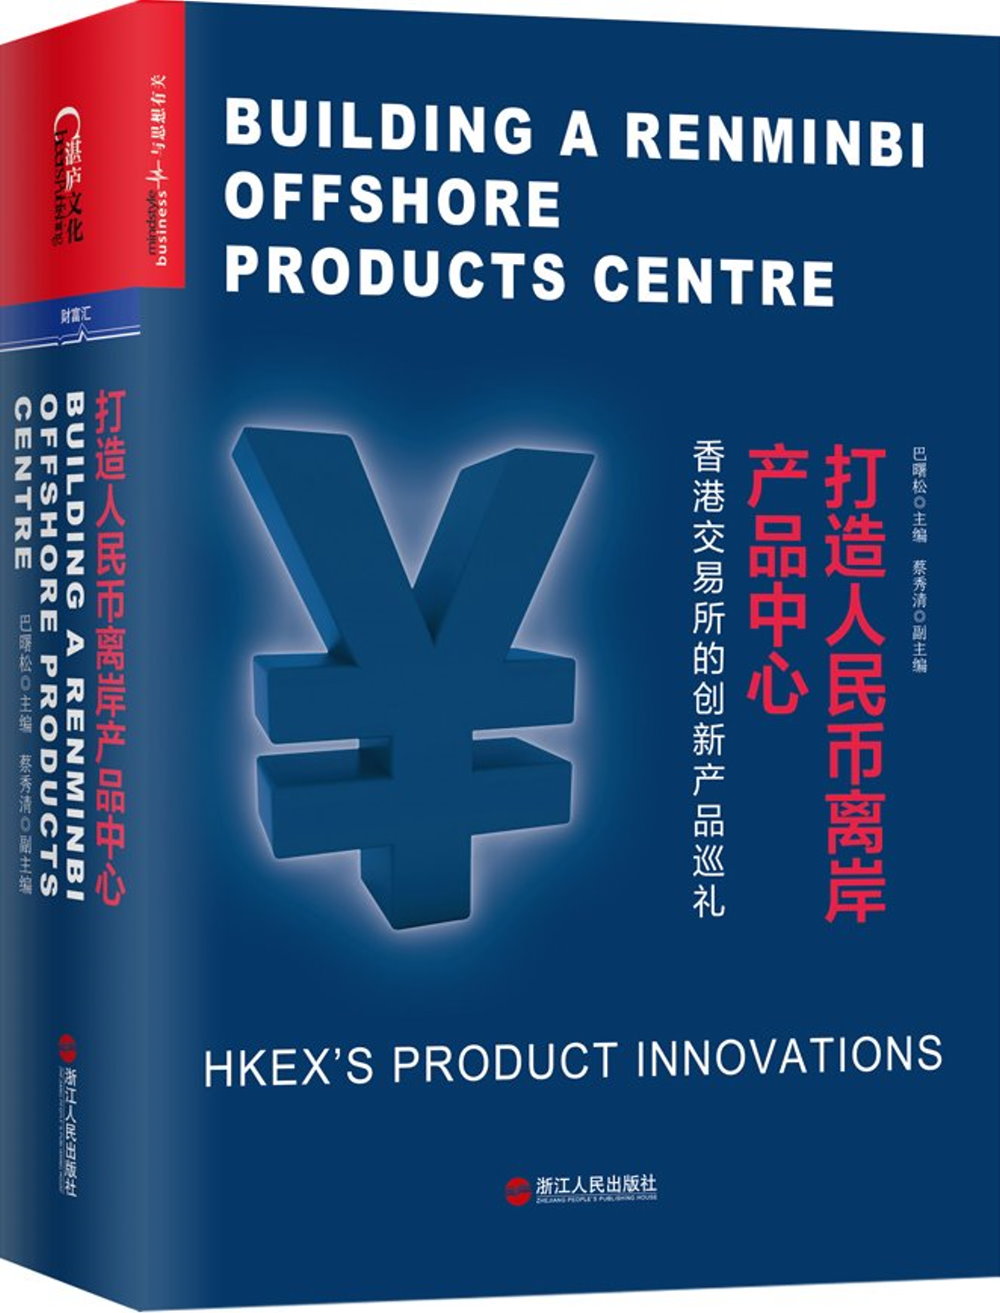 打造人民幣離岸產品中心：香港交易所的創新產品巡禮